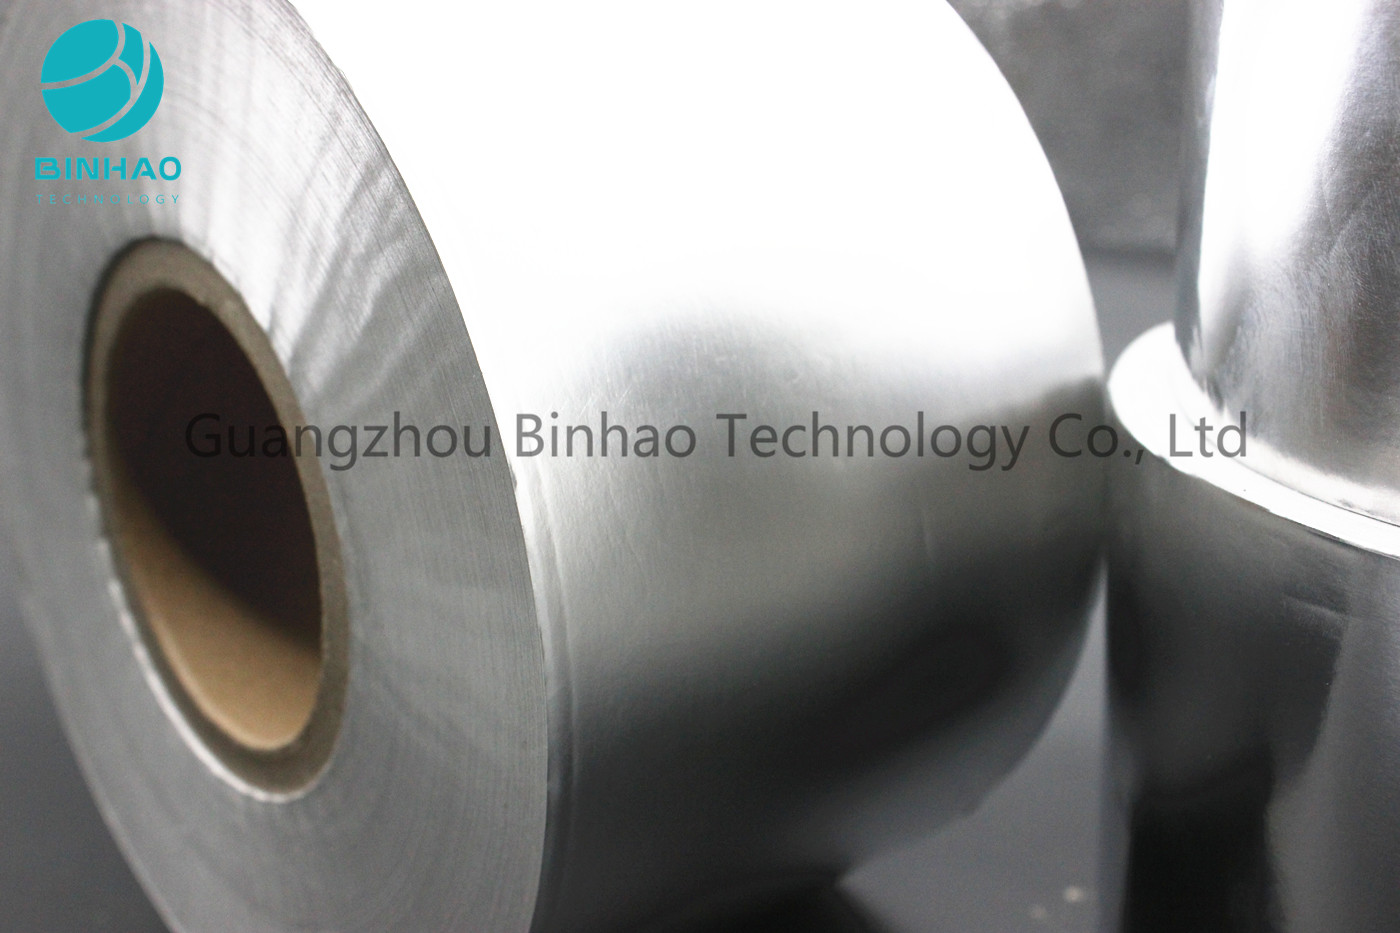 El papel de aluminio laminado del papel bajo/el empaquetado de papel de aluminio modifica para requisitos particulares